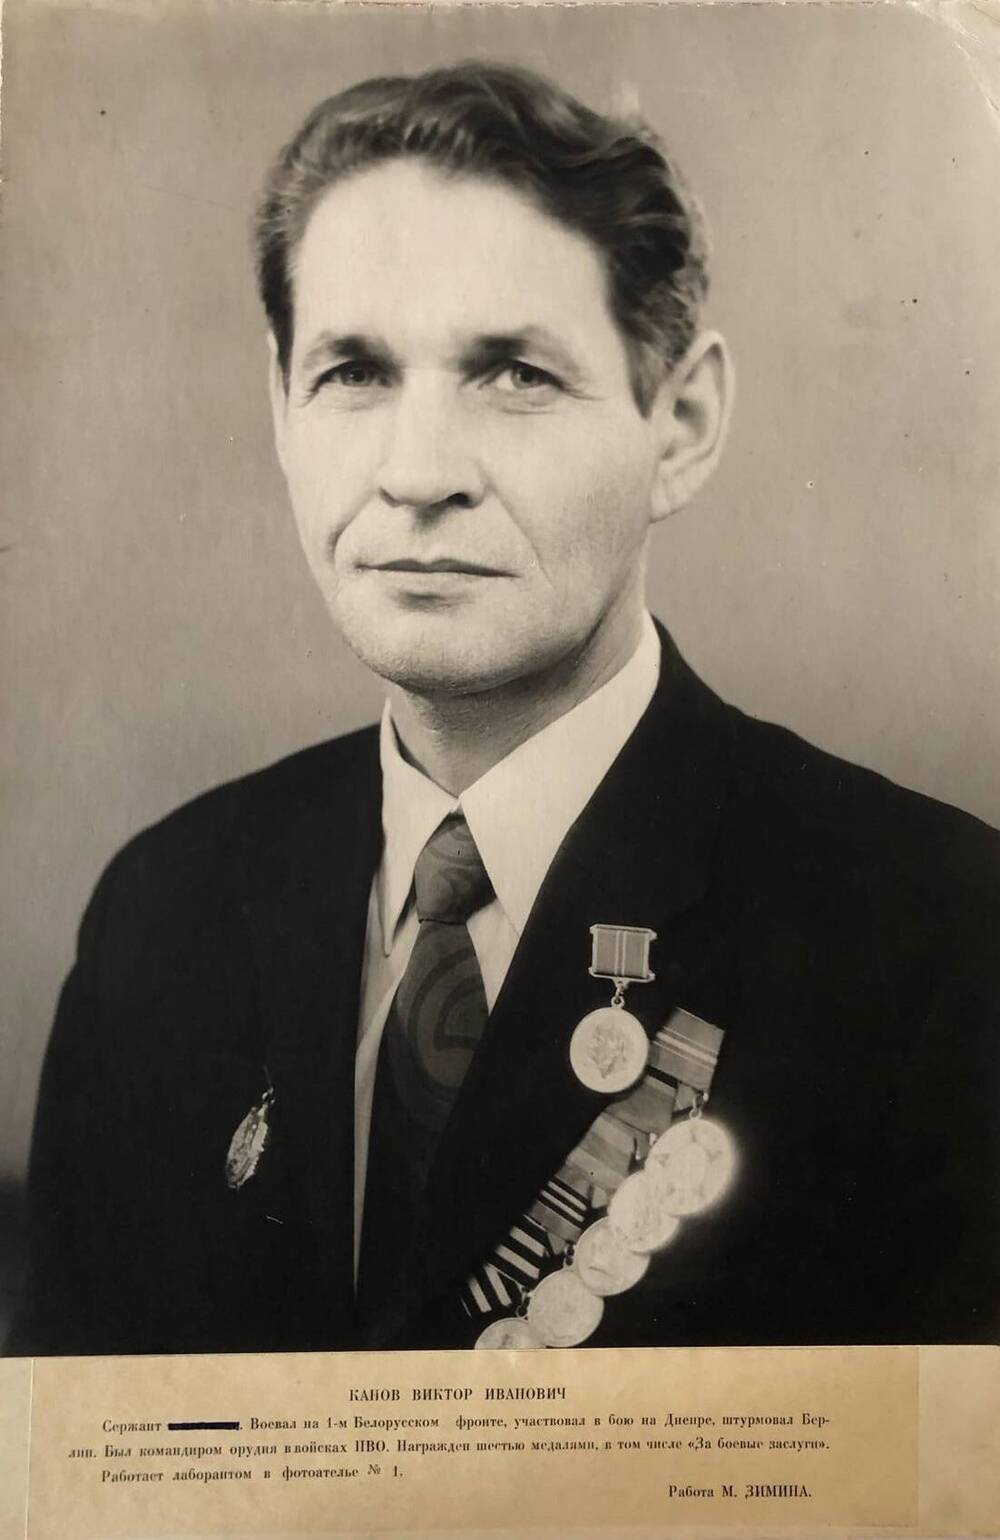 Фотография Канова Виктора Ивановича, участника Великой Отечественной войны 1941-1945 гг.